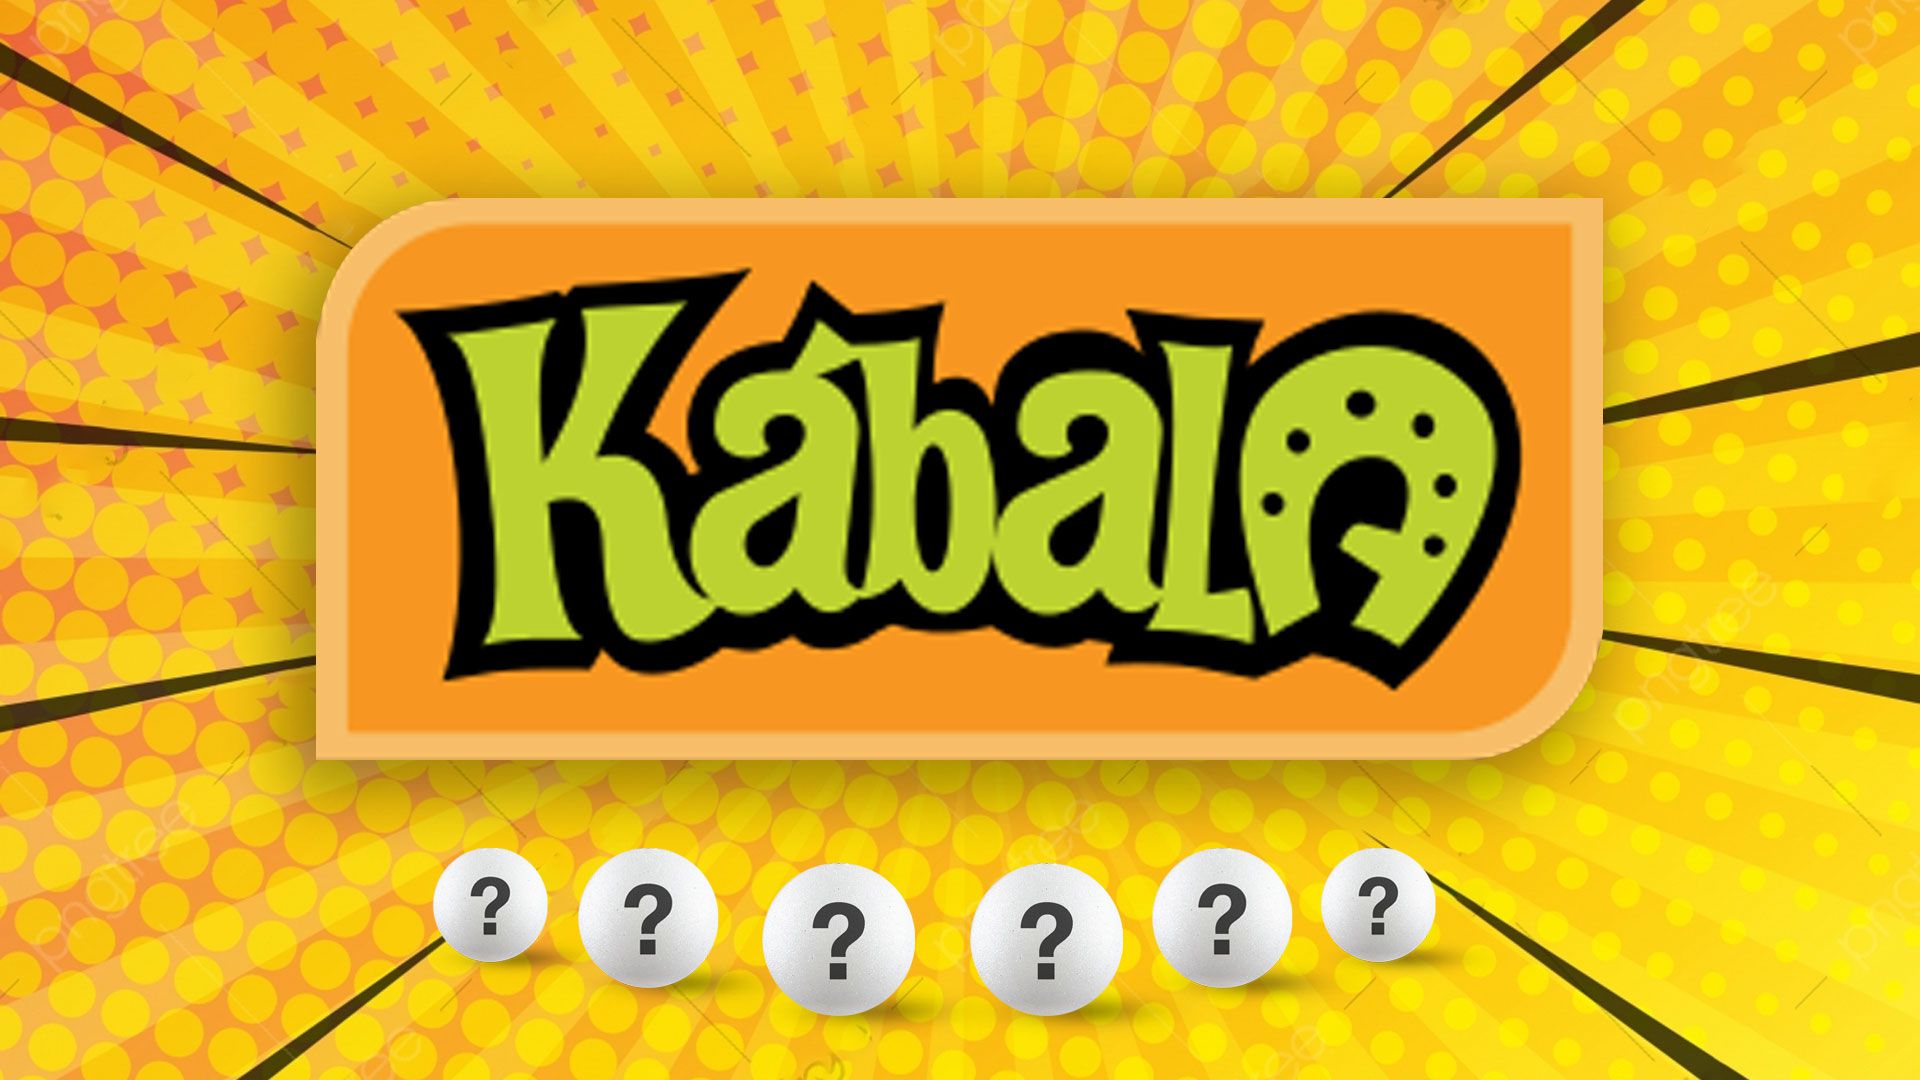 Lotería Nacional: ganadores de la Kábala este 23 de mayo